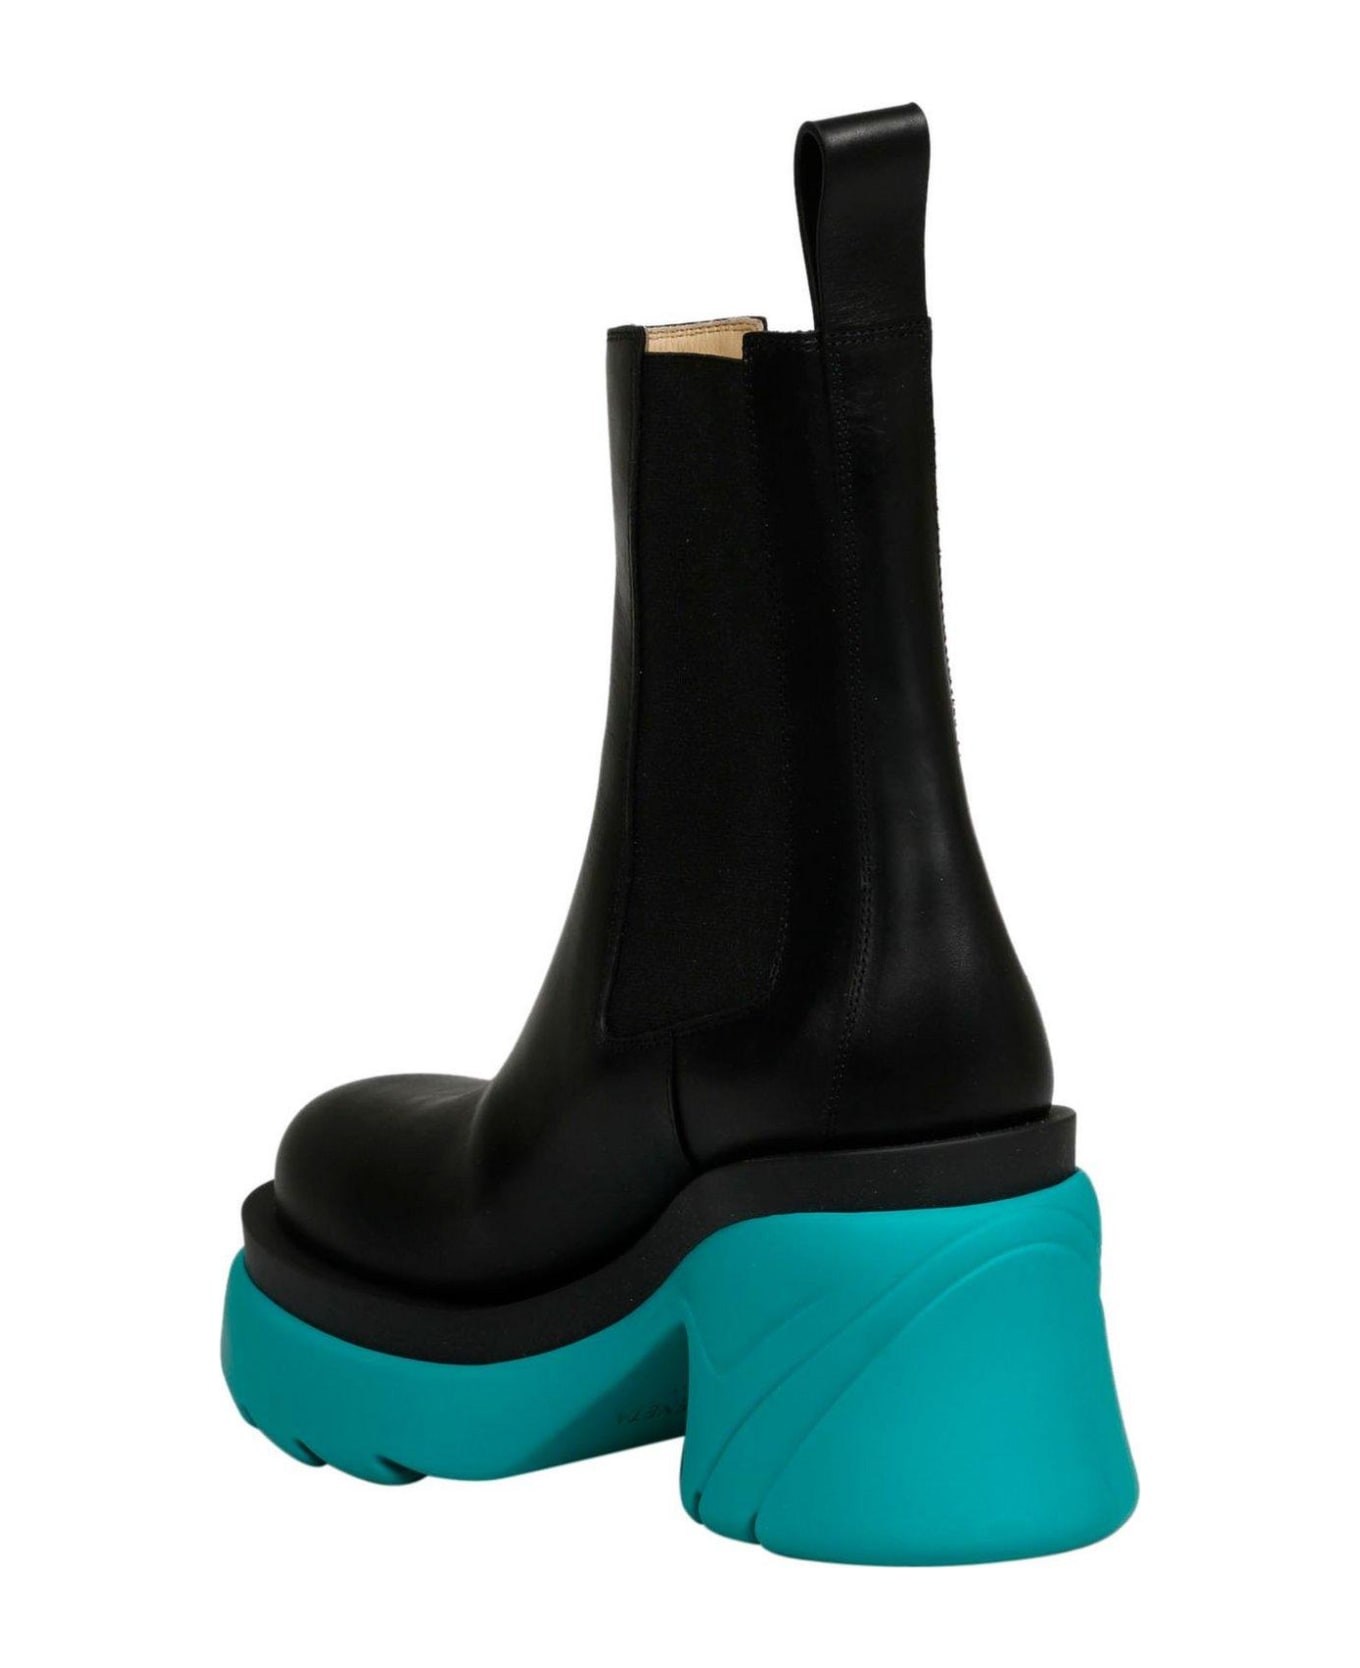 Bottega Veneta Flash Chelsea Boots - BLACK ブーツ